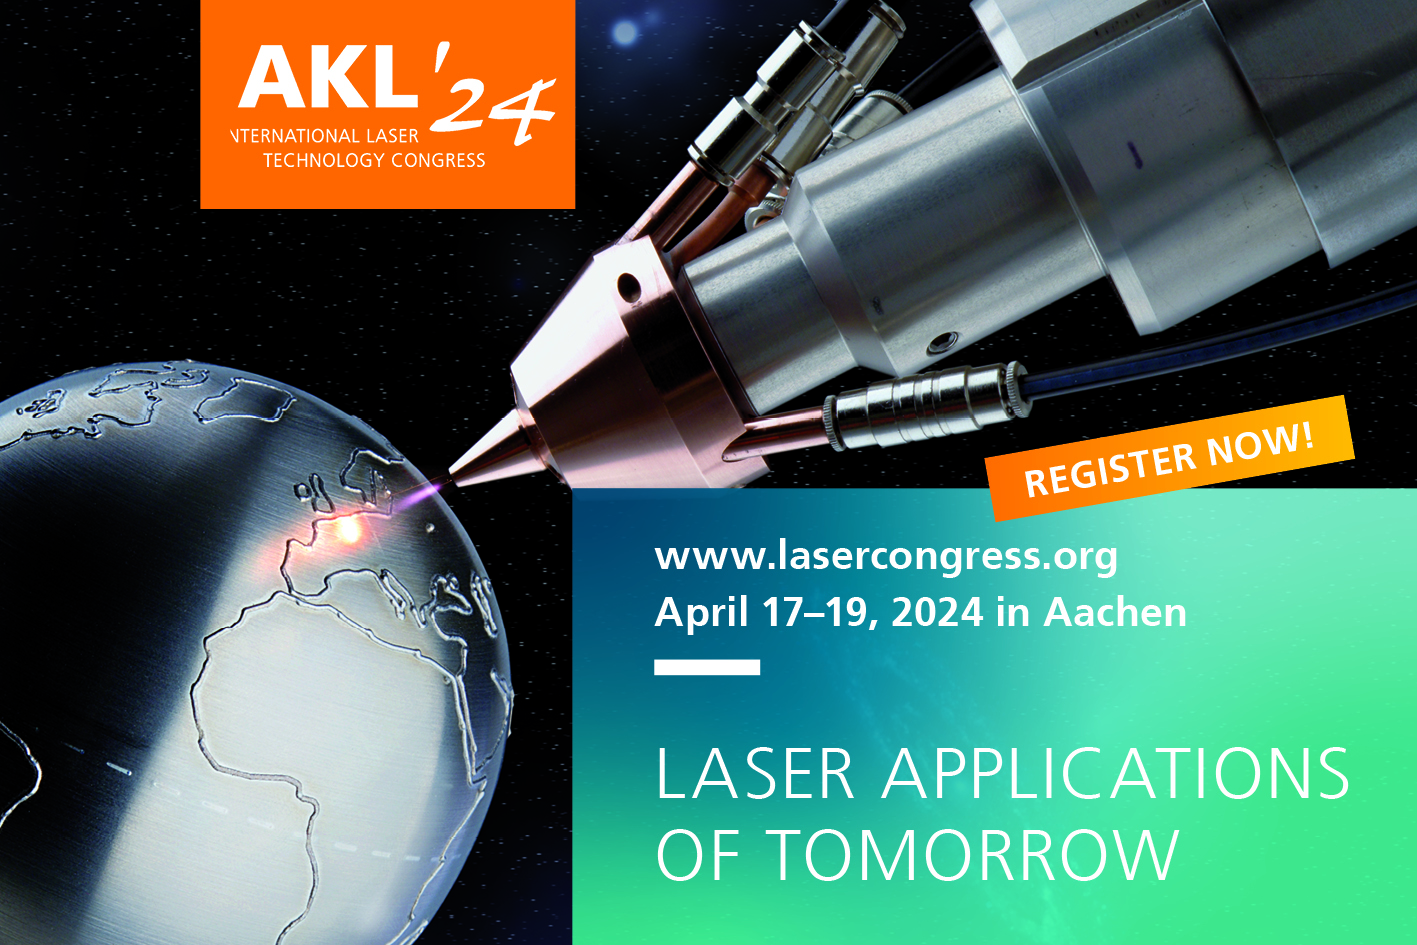 Die Anmeldungen zum AKL’24 sind ab sofort unter www.lasercongress.org möglich.